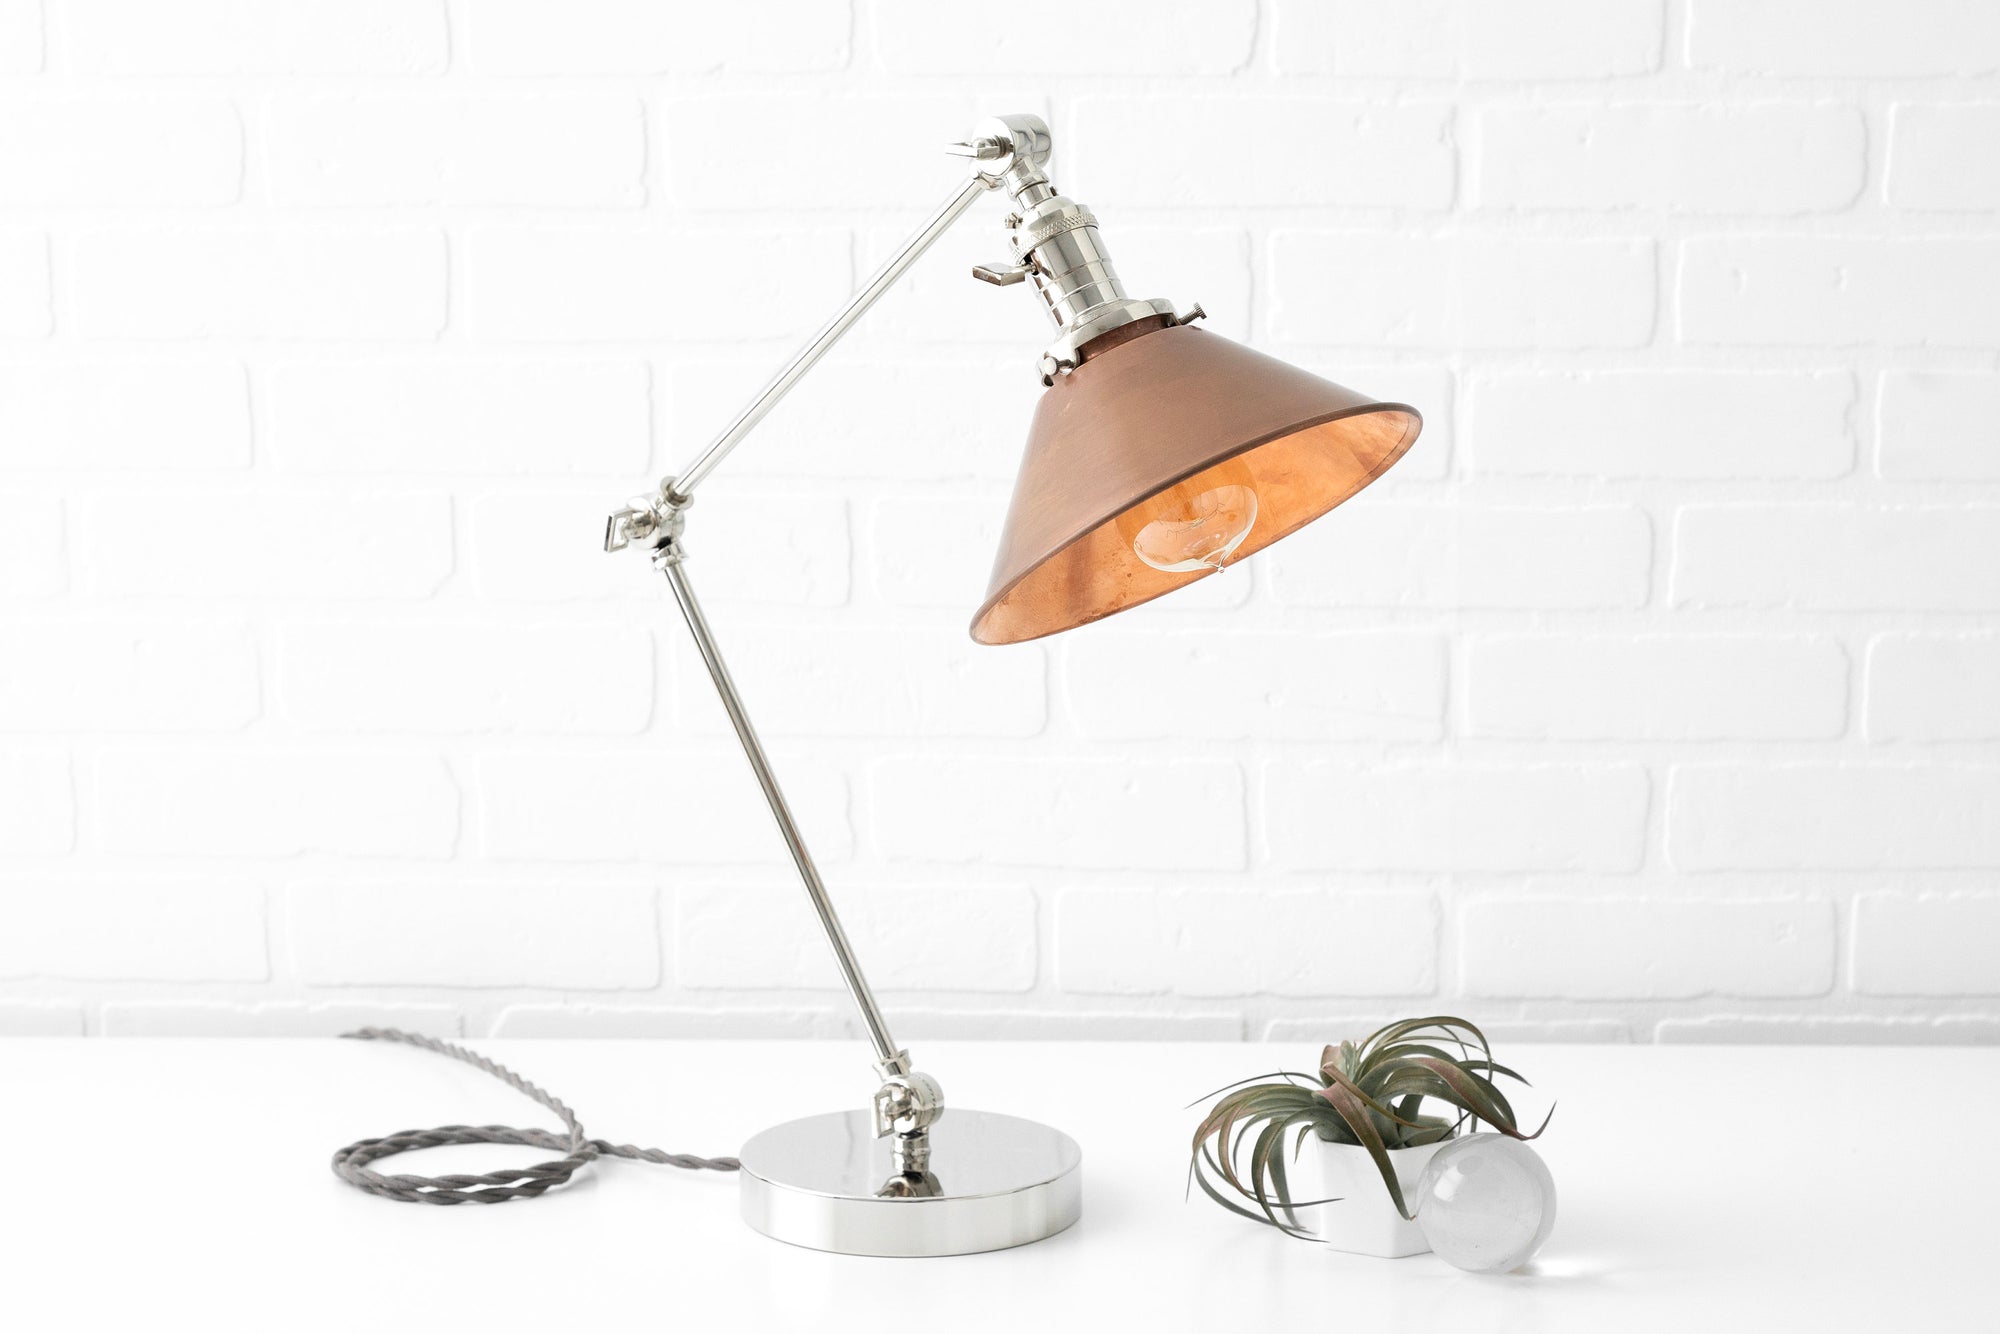 Desk Lamp, Designer Lighting